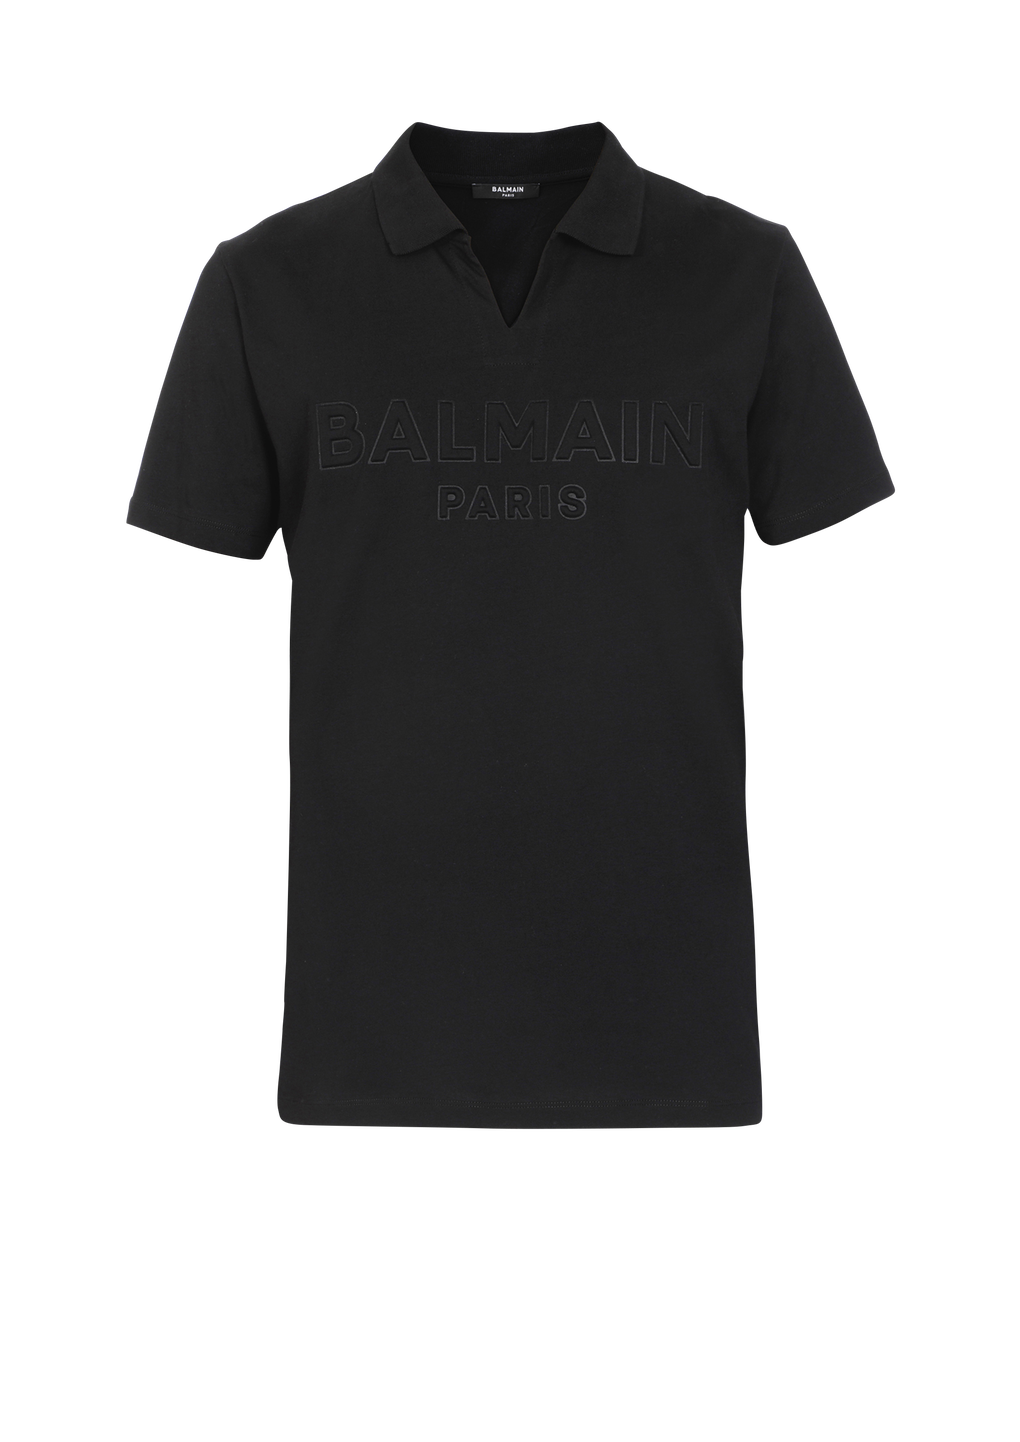 Polo en coton avec logo Balmain embossé, noir, hi-res